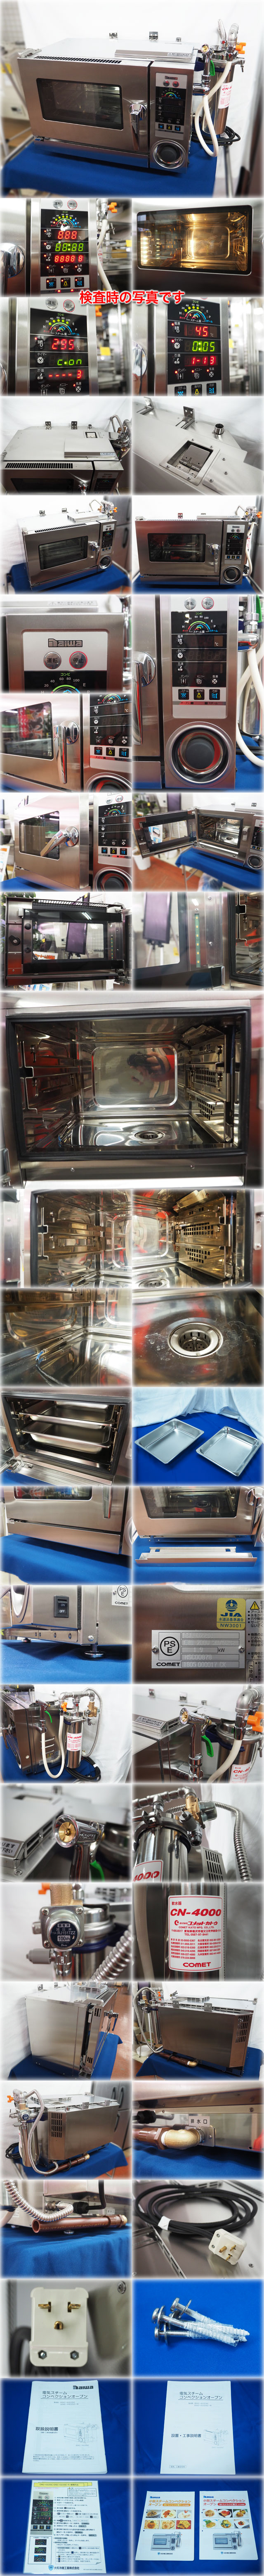 ビジネスダイワ冷機 電気スチームコンベクションオーブン DSC-022SC 単200V 1/2ホテルパン2段 取説付 オーブン